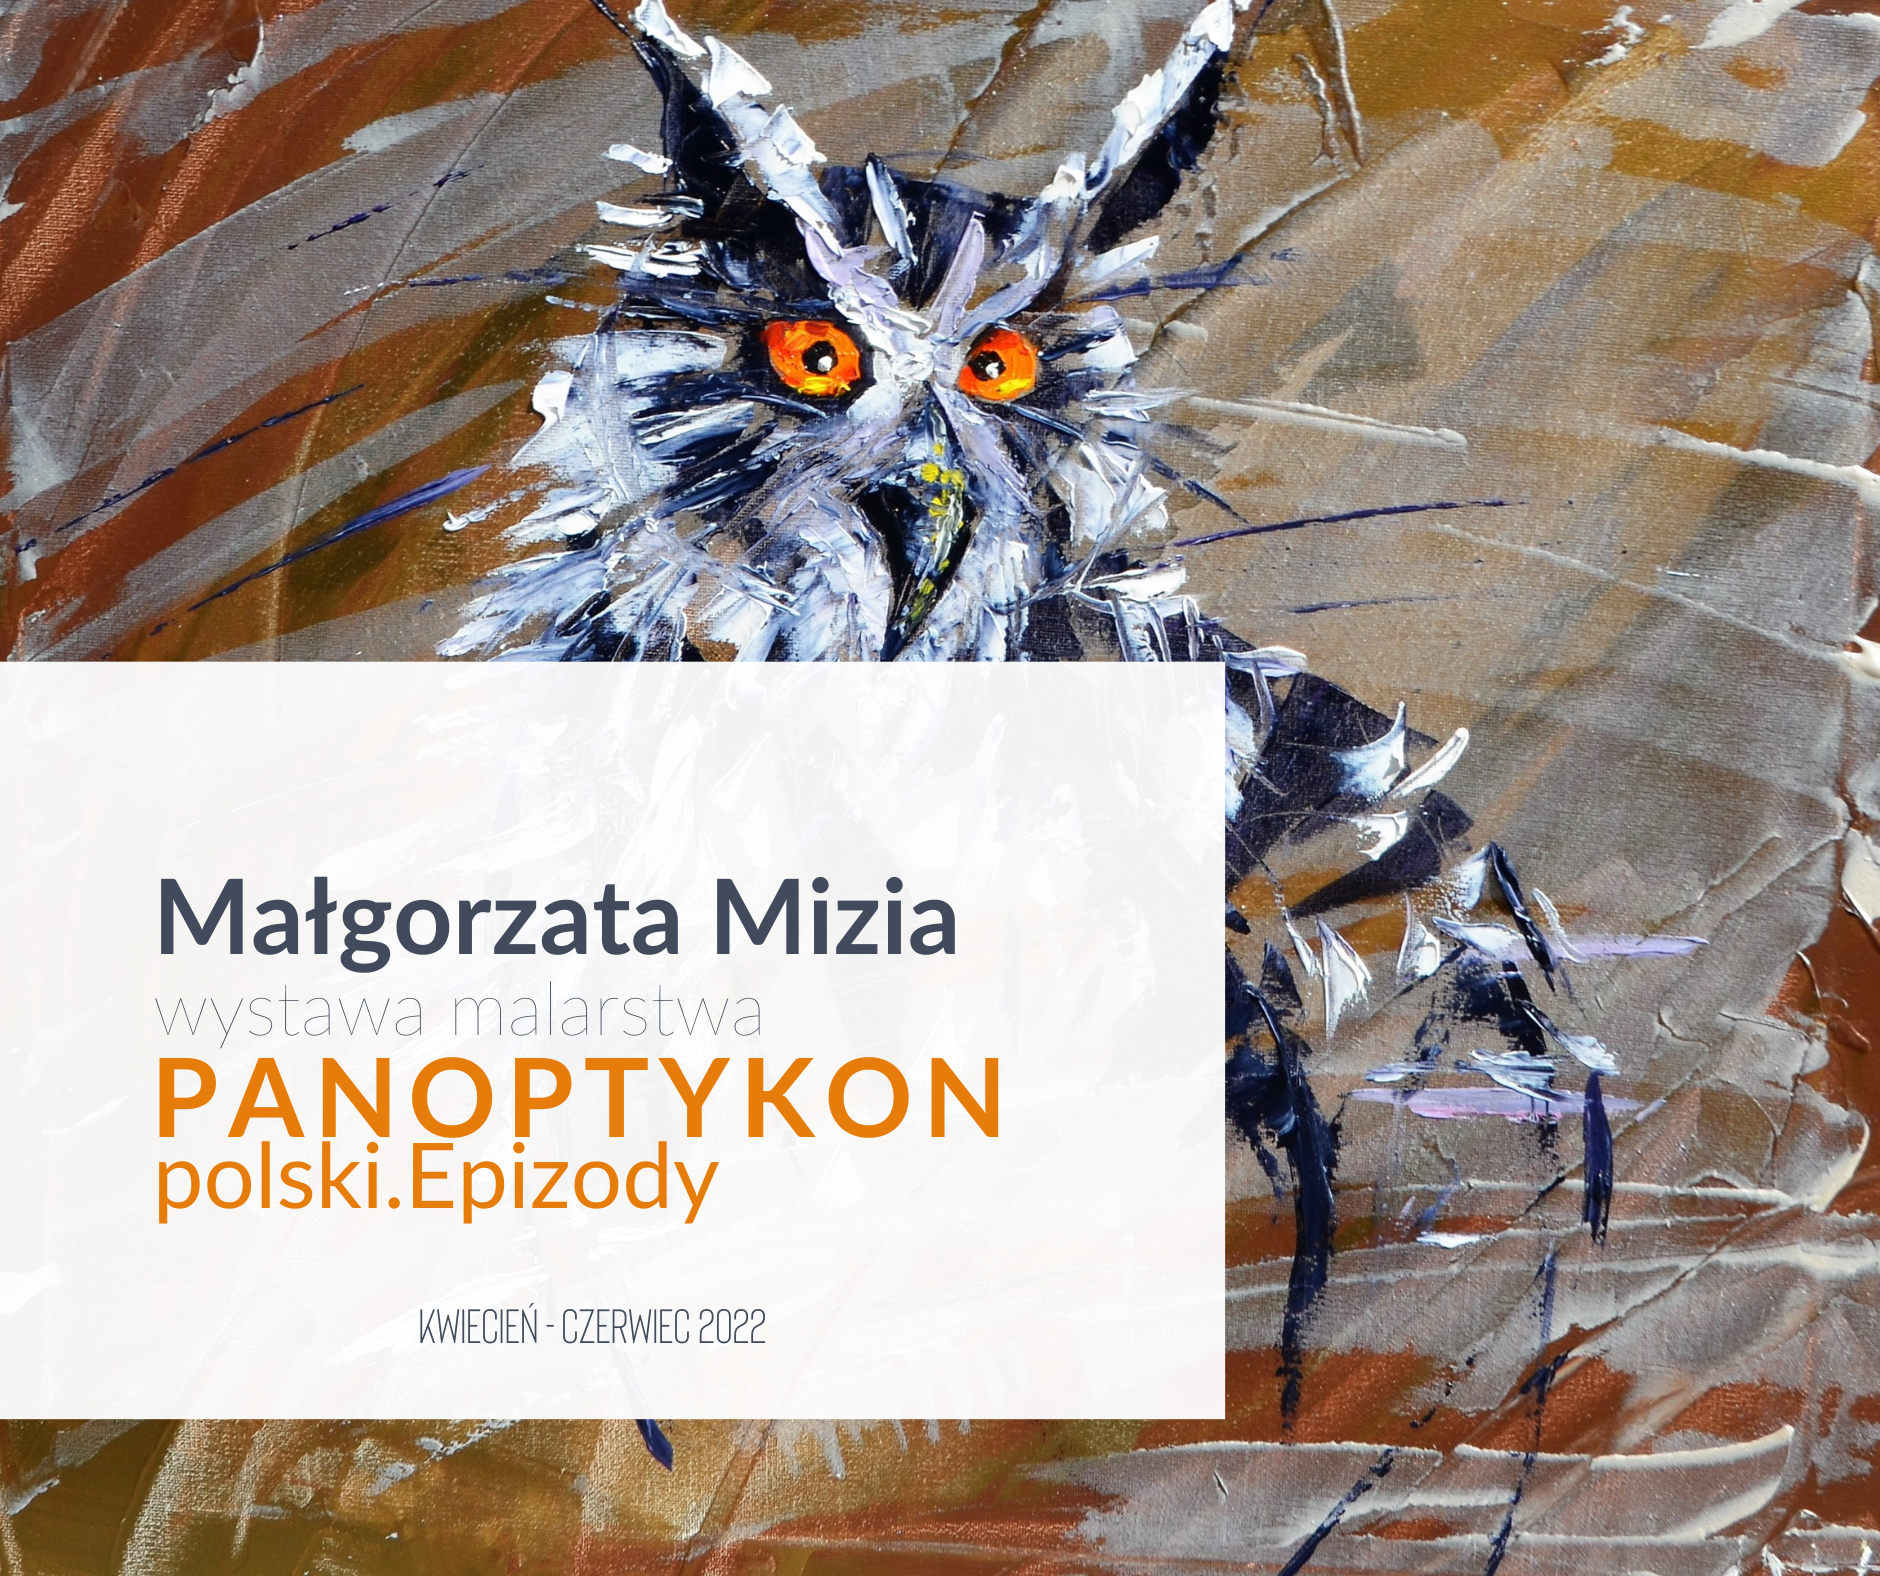  Małgorzata Mizia: Panoptykon polski - epizody Na zdjęciu plakat wystawy